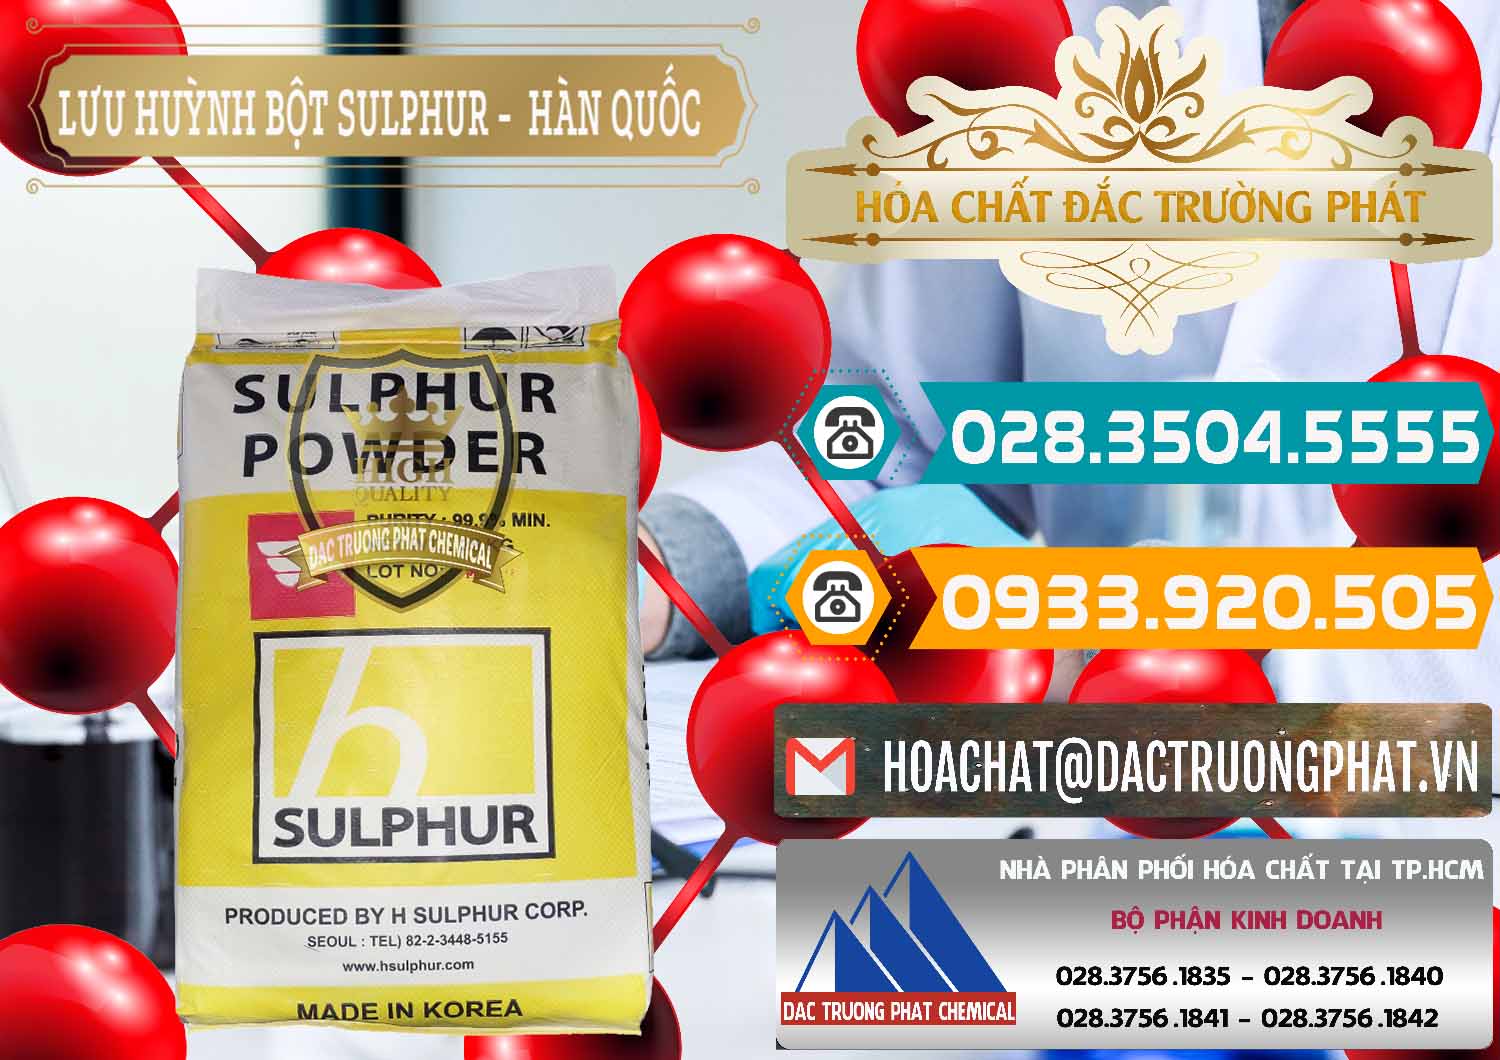 Nơi chuyên cung cấp và bán Lưu huỳnh Bột - Sulfur Powder ( H Sulfur ) Hàn Quốc Korea - 0199 - Cty chuyên phân phối ( kinh doanh ) hóa chất tại TP.HCM - congtyhoachat.vn